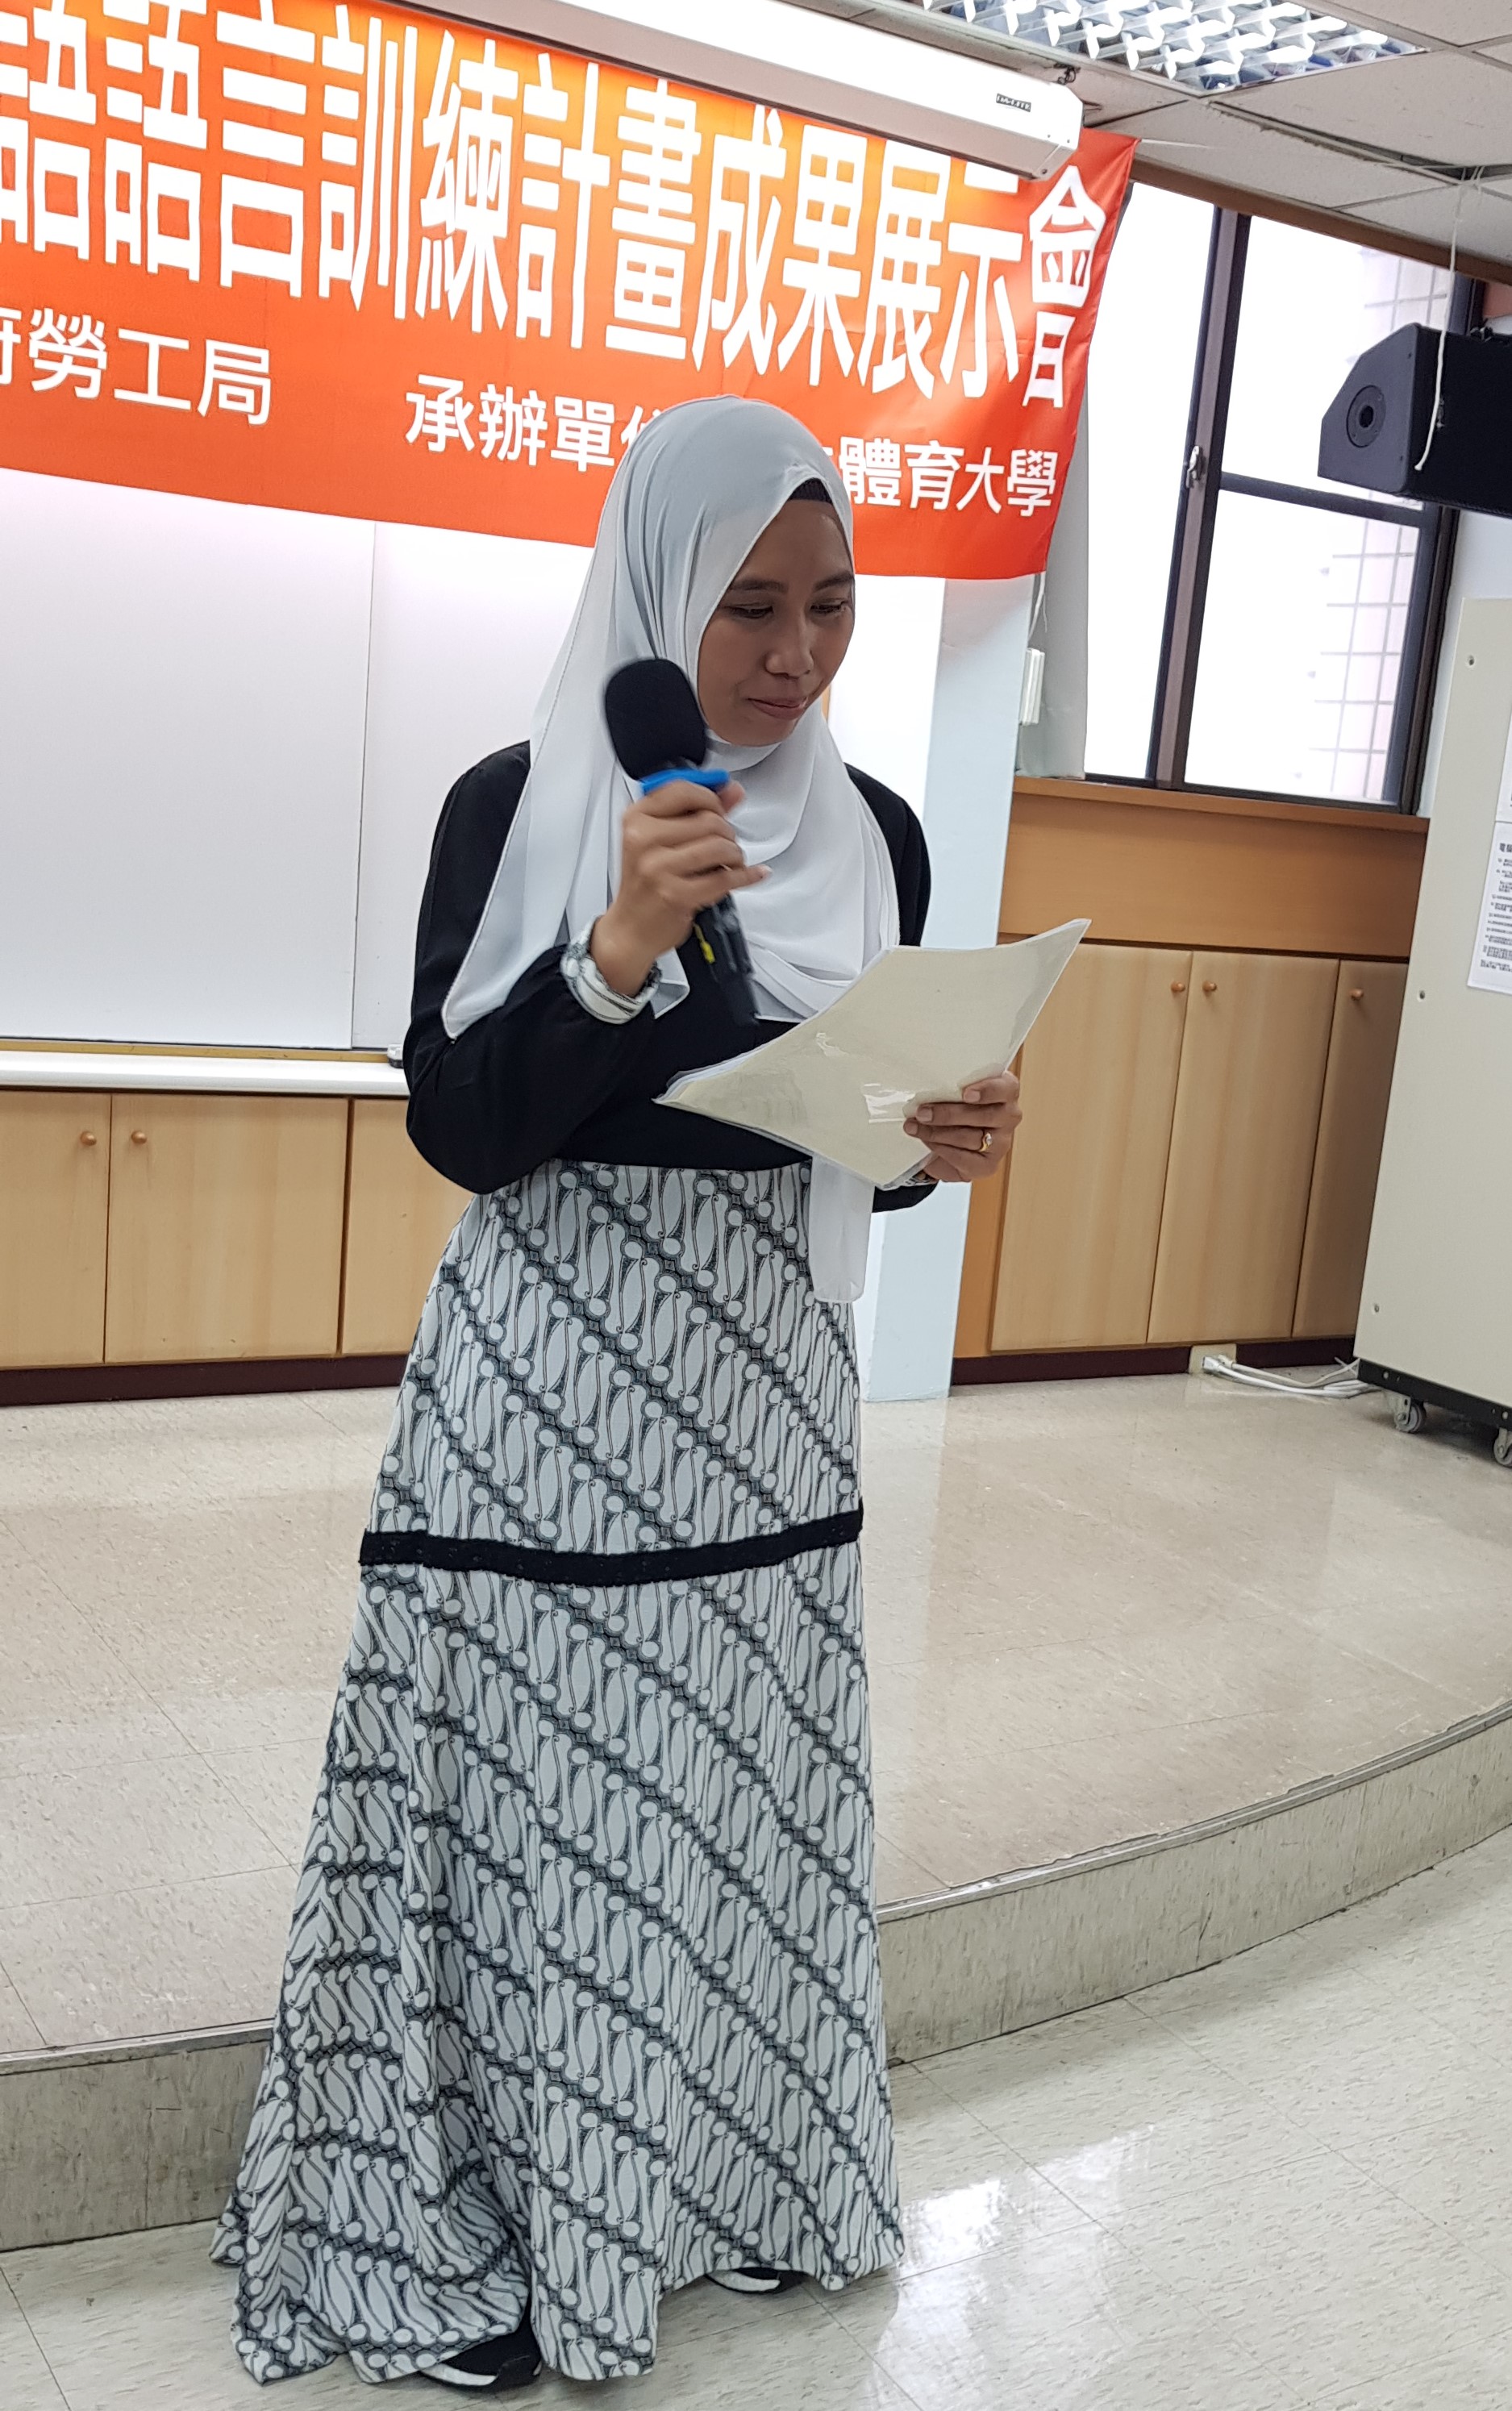 印尼學員咪咪在雇主的支持下報名參加華語課程，她表示課堂上所學到的華語非常實用，未來回印尼後想要當導遊